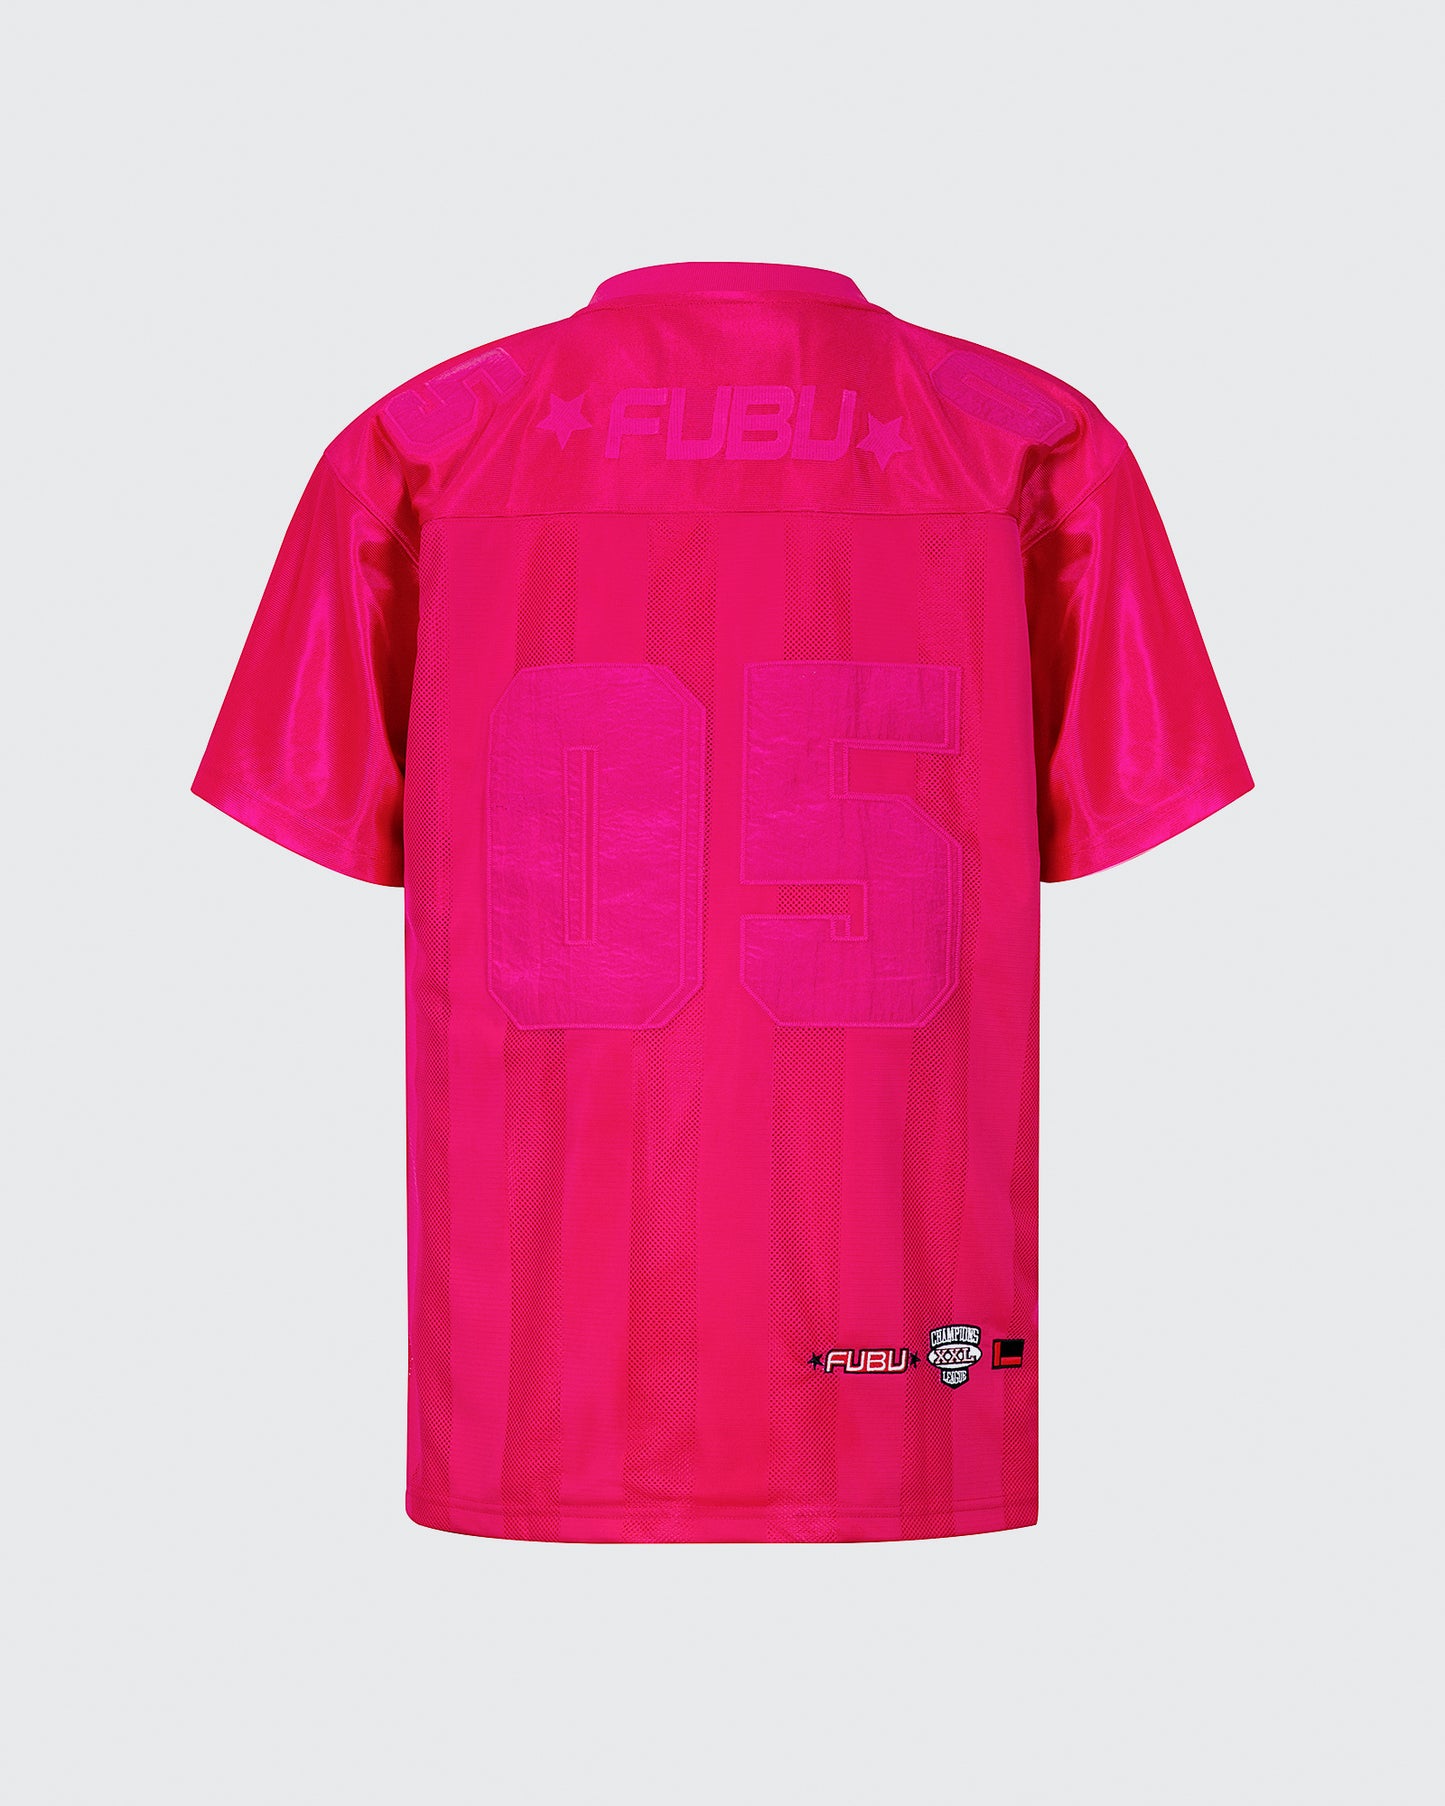 Shocking Pink 05 Iconic Jersey